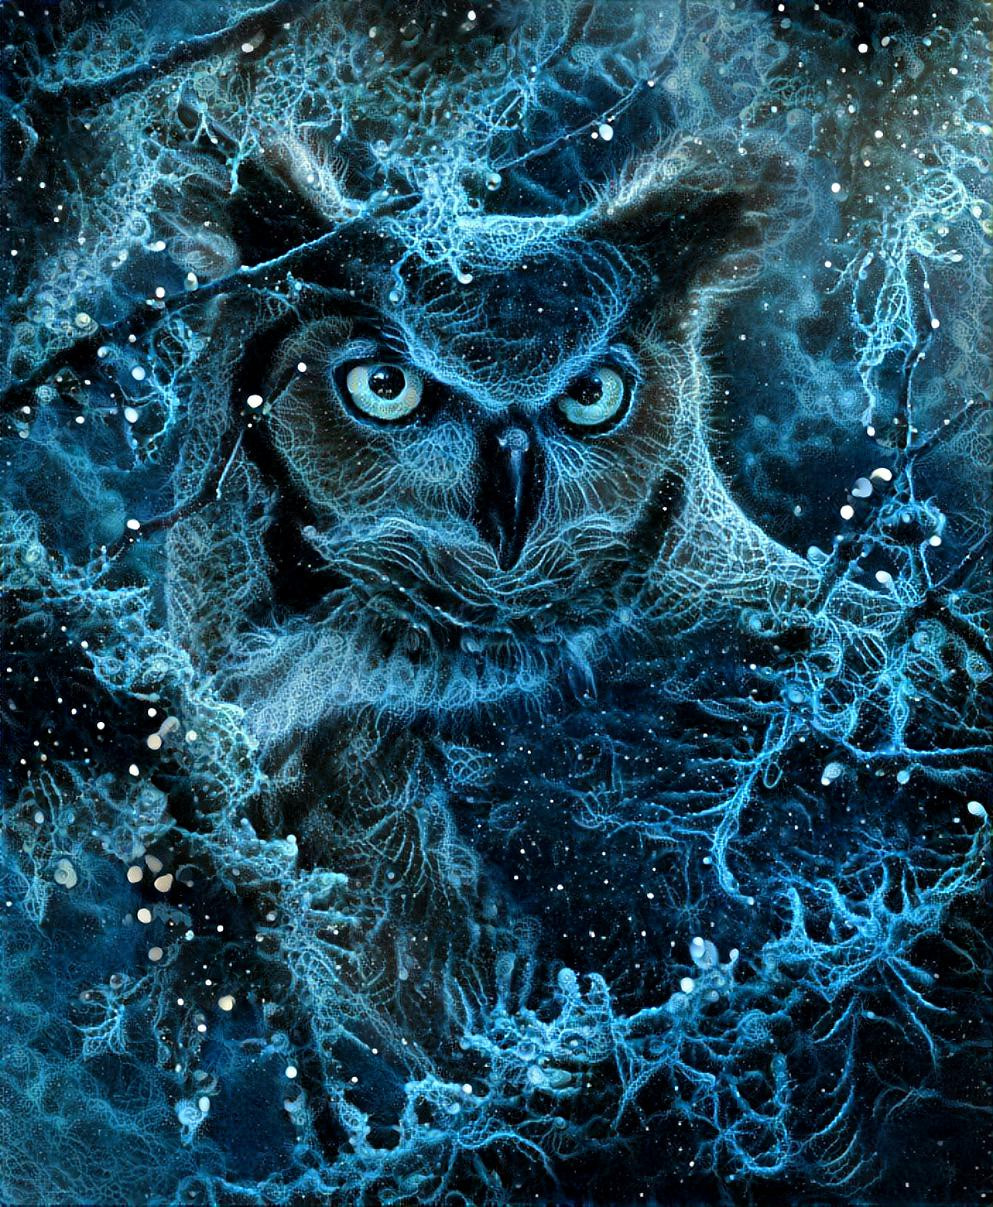 Energy-woven owl